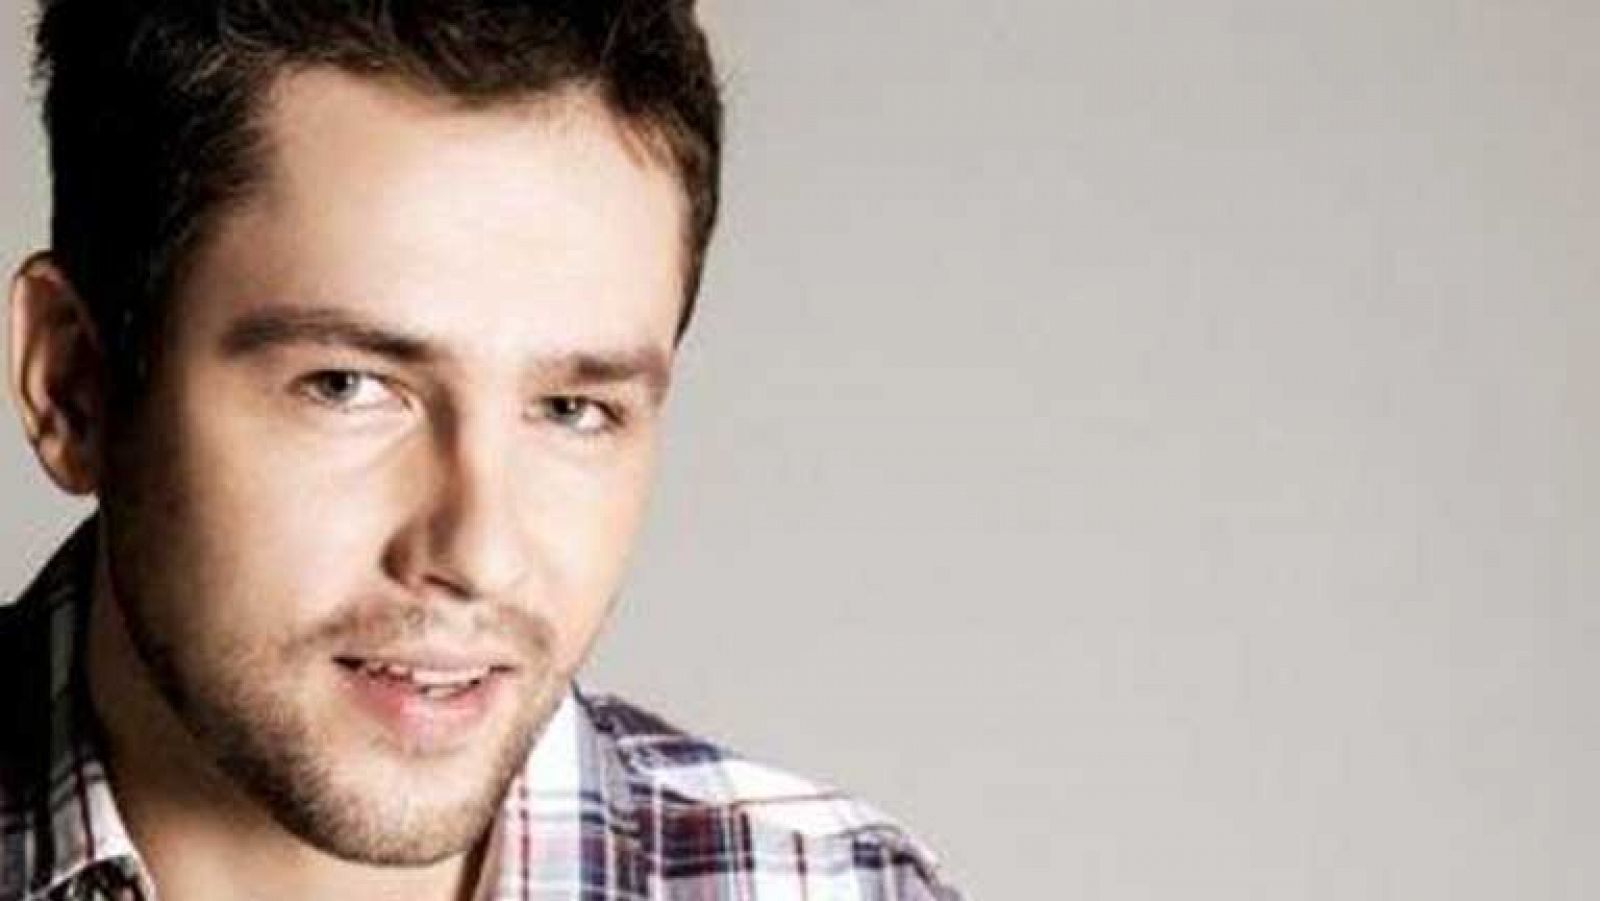 Eurovisión 2013 - Andrius Pojavis representa a Lituania en Eurovisión 2013 con la canción "Som